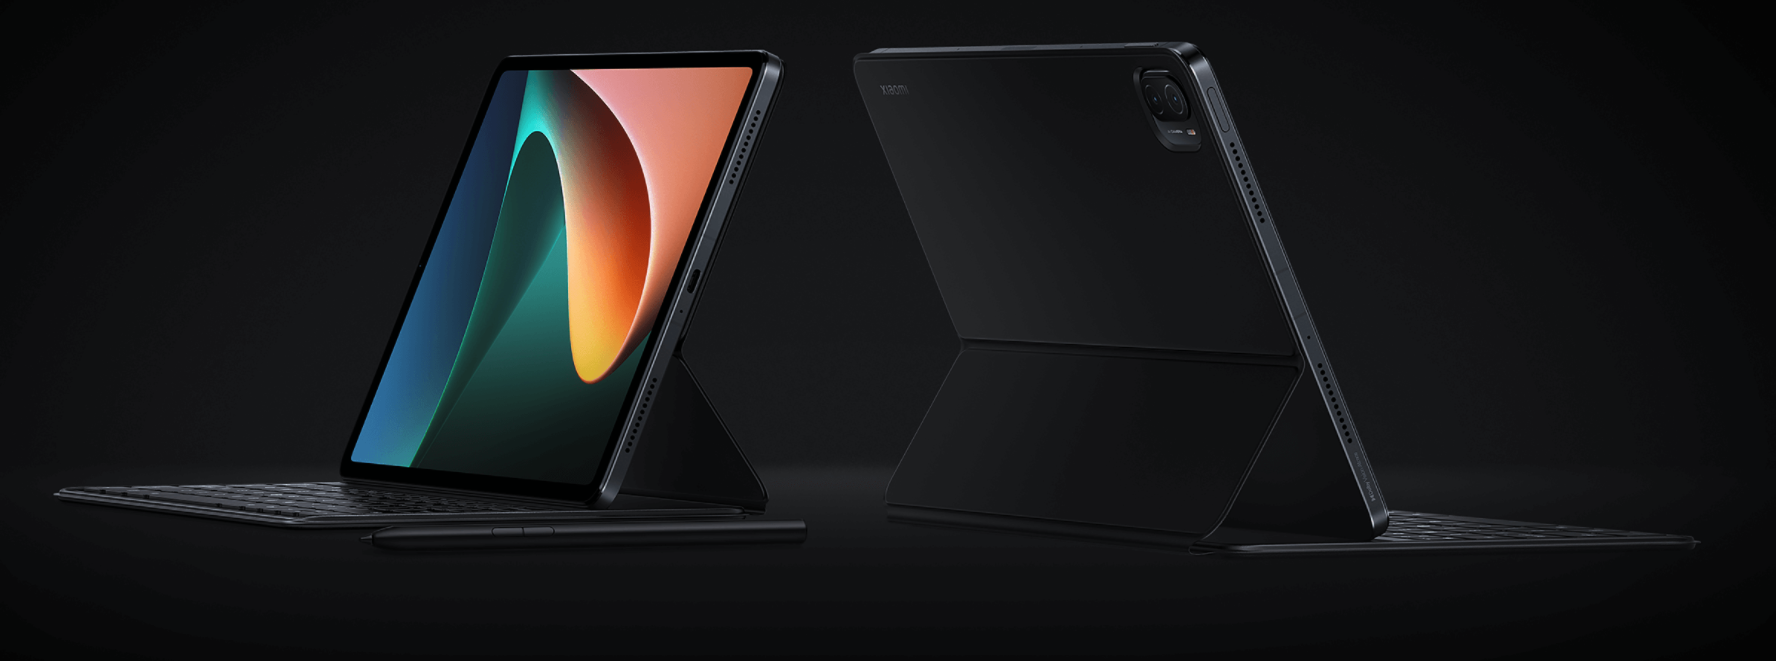 Xiaomi Mi Pad 5 und Mi Pad 5 Pro Tabletten mit neuer Firmware enthüllt, preislich ab $310